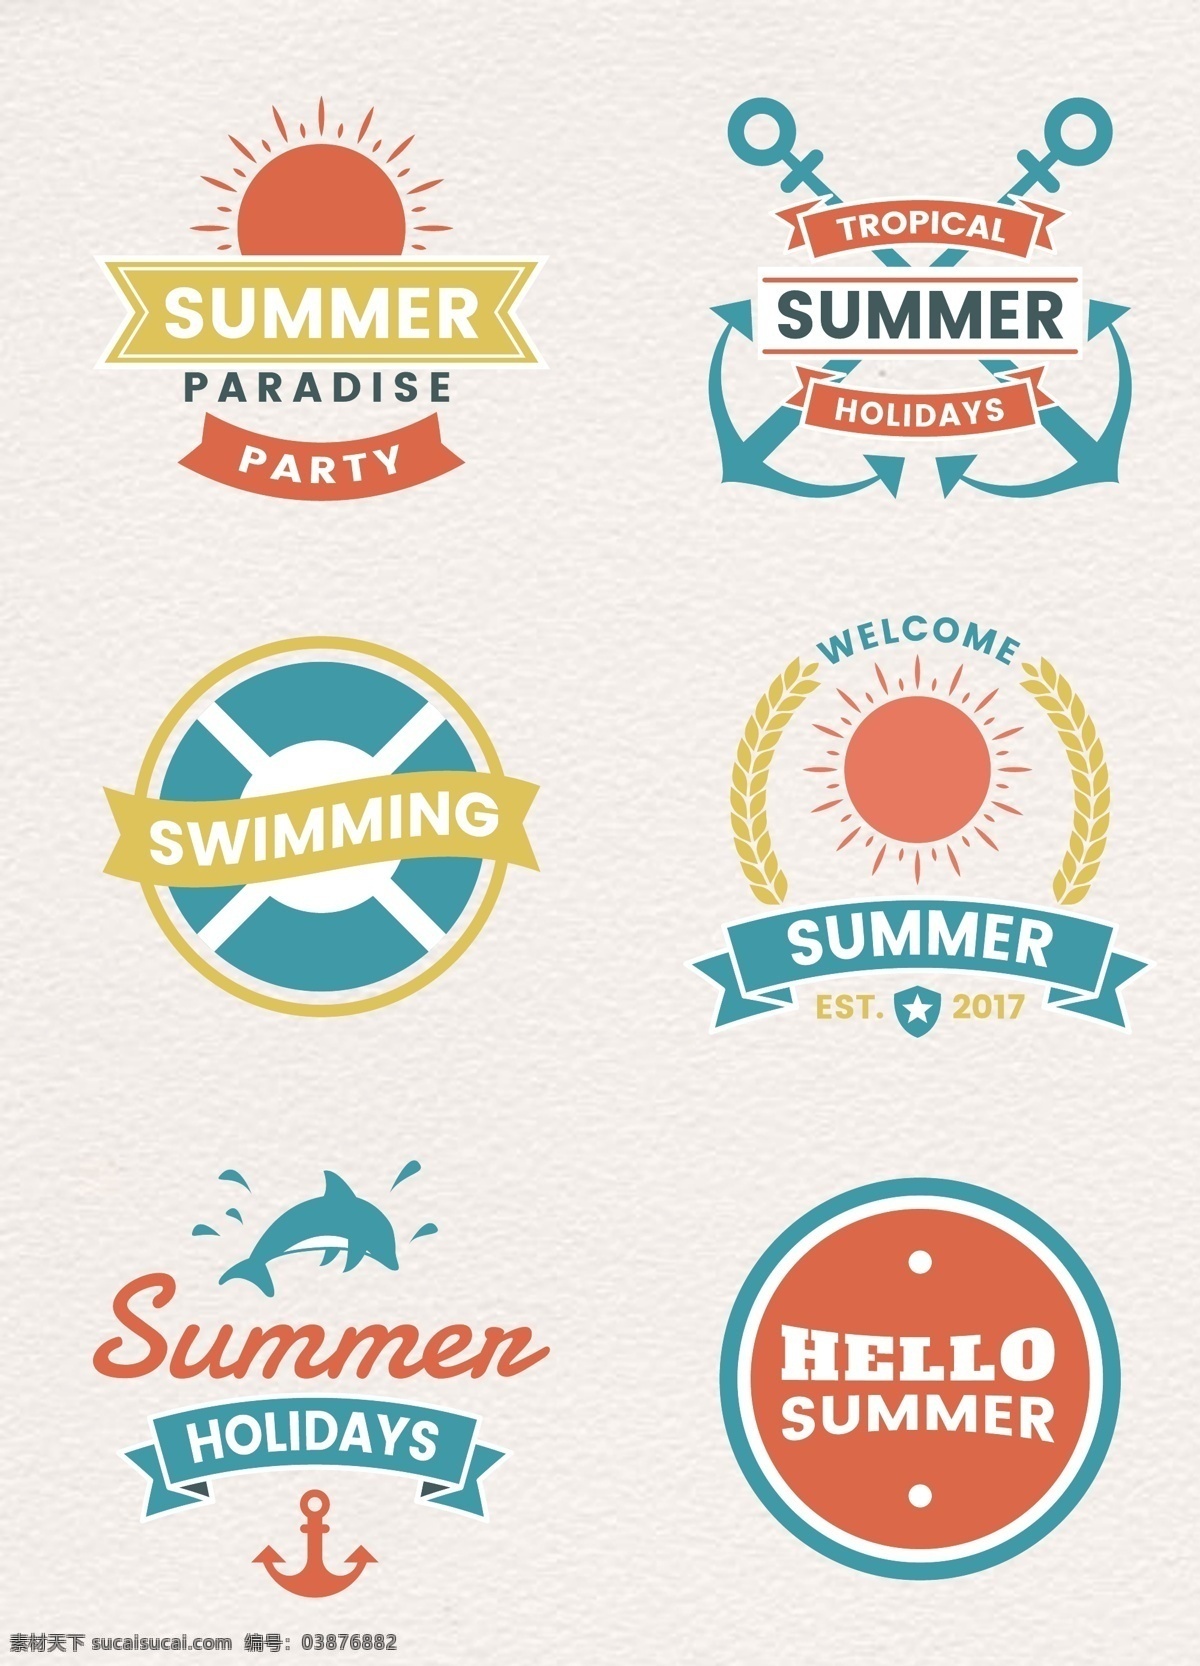 彩色 手绘 夏日 旅行 标签 设计素材 矢量图 标签设计 夏季标签 卡通 夏日标签 旅行标签 夏日旅行 夏季旅行